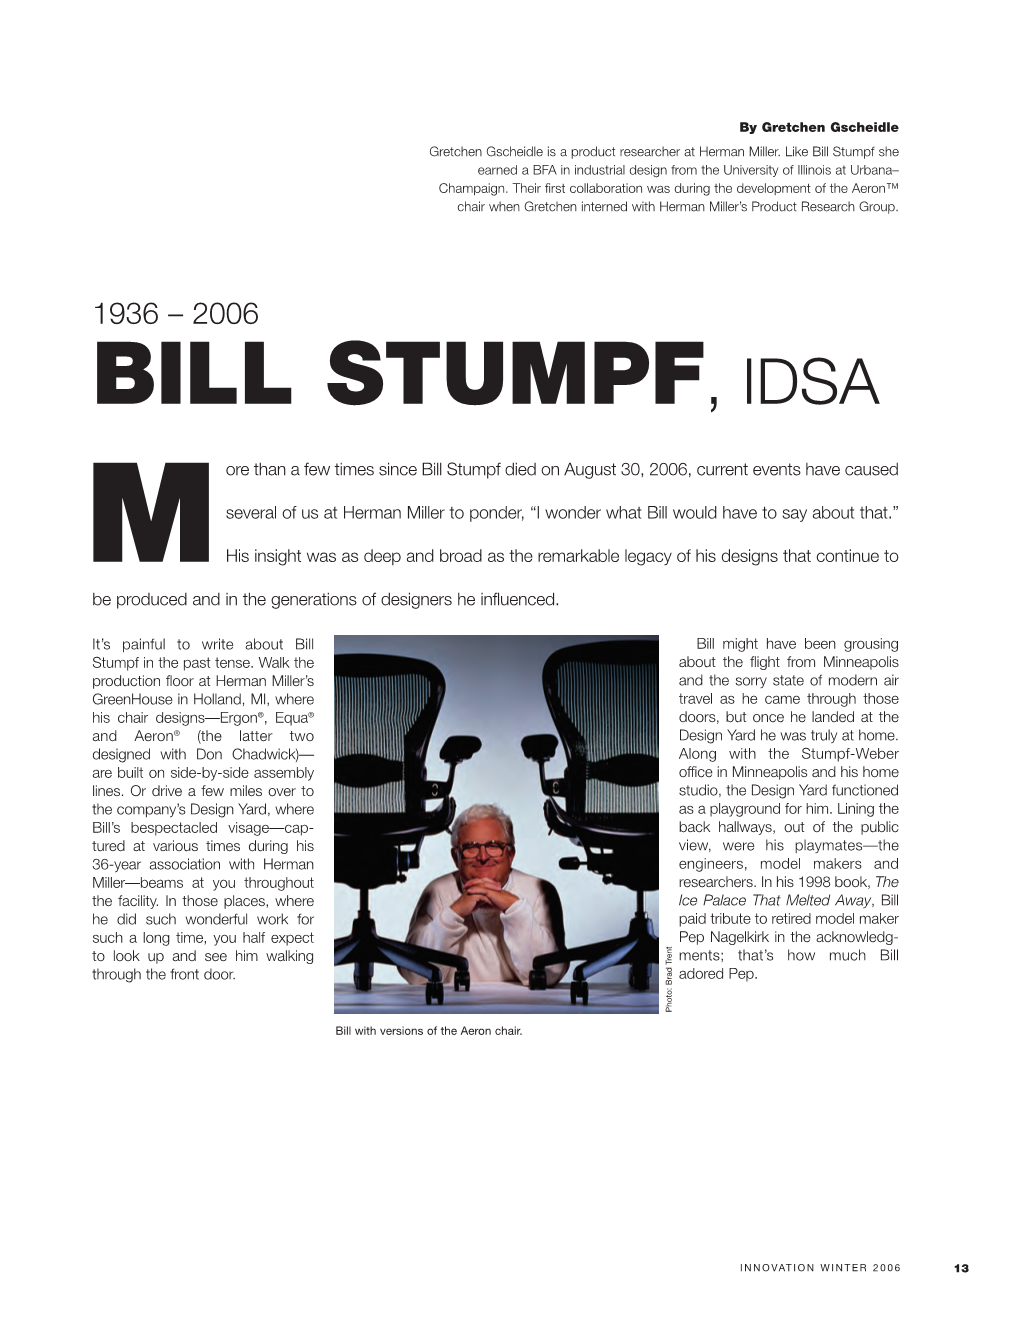 Bill Stumpf, Idsa